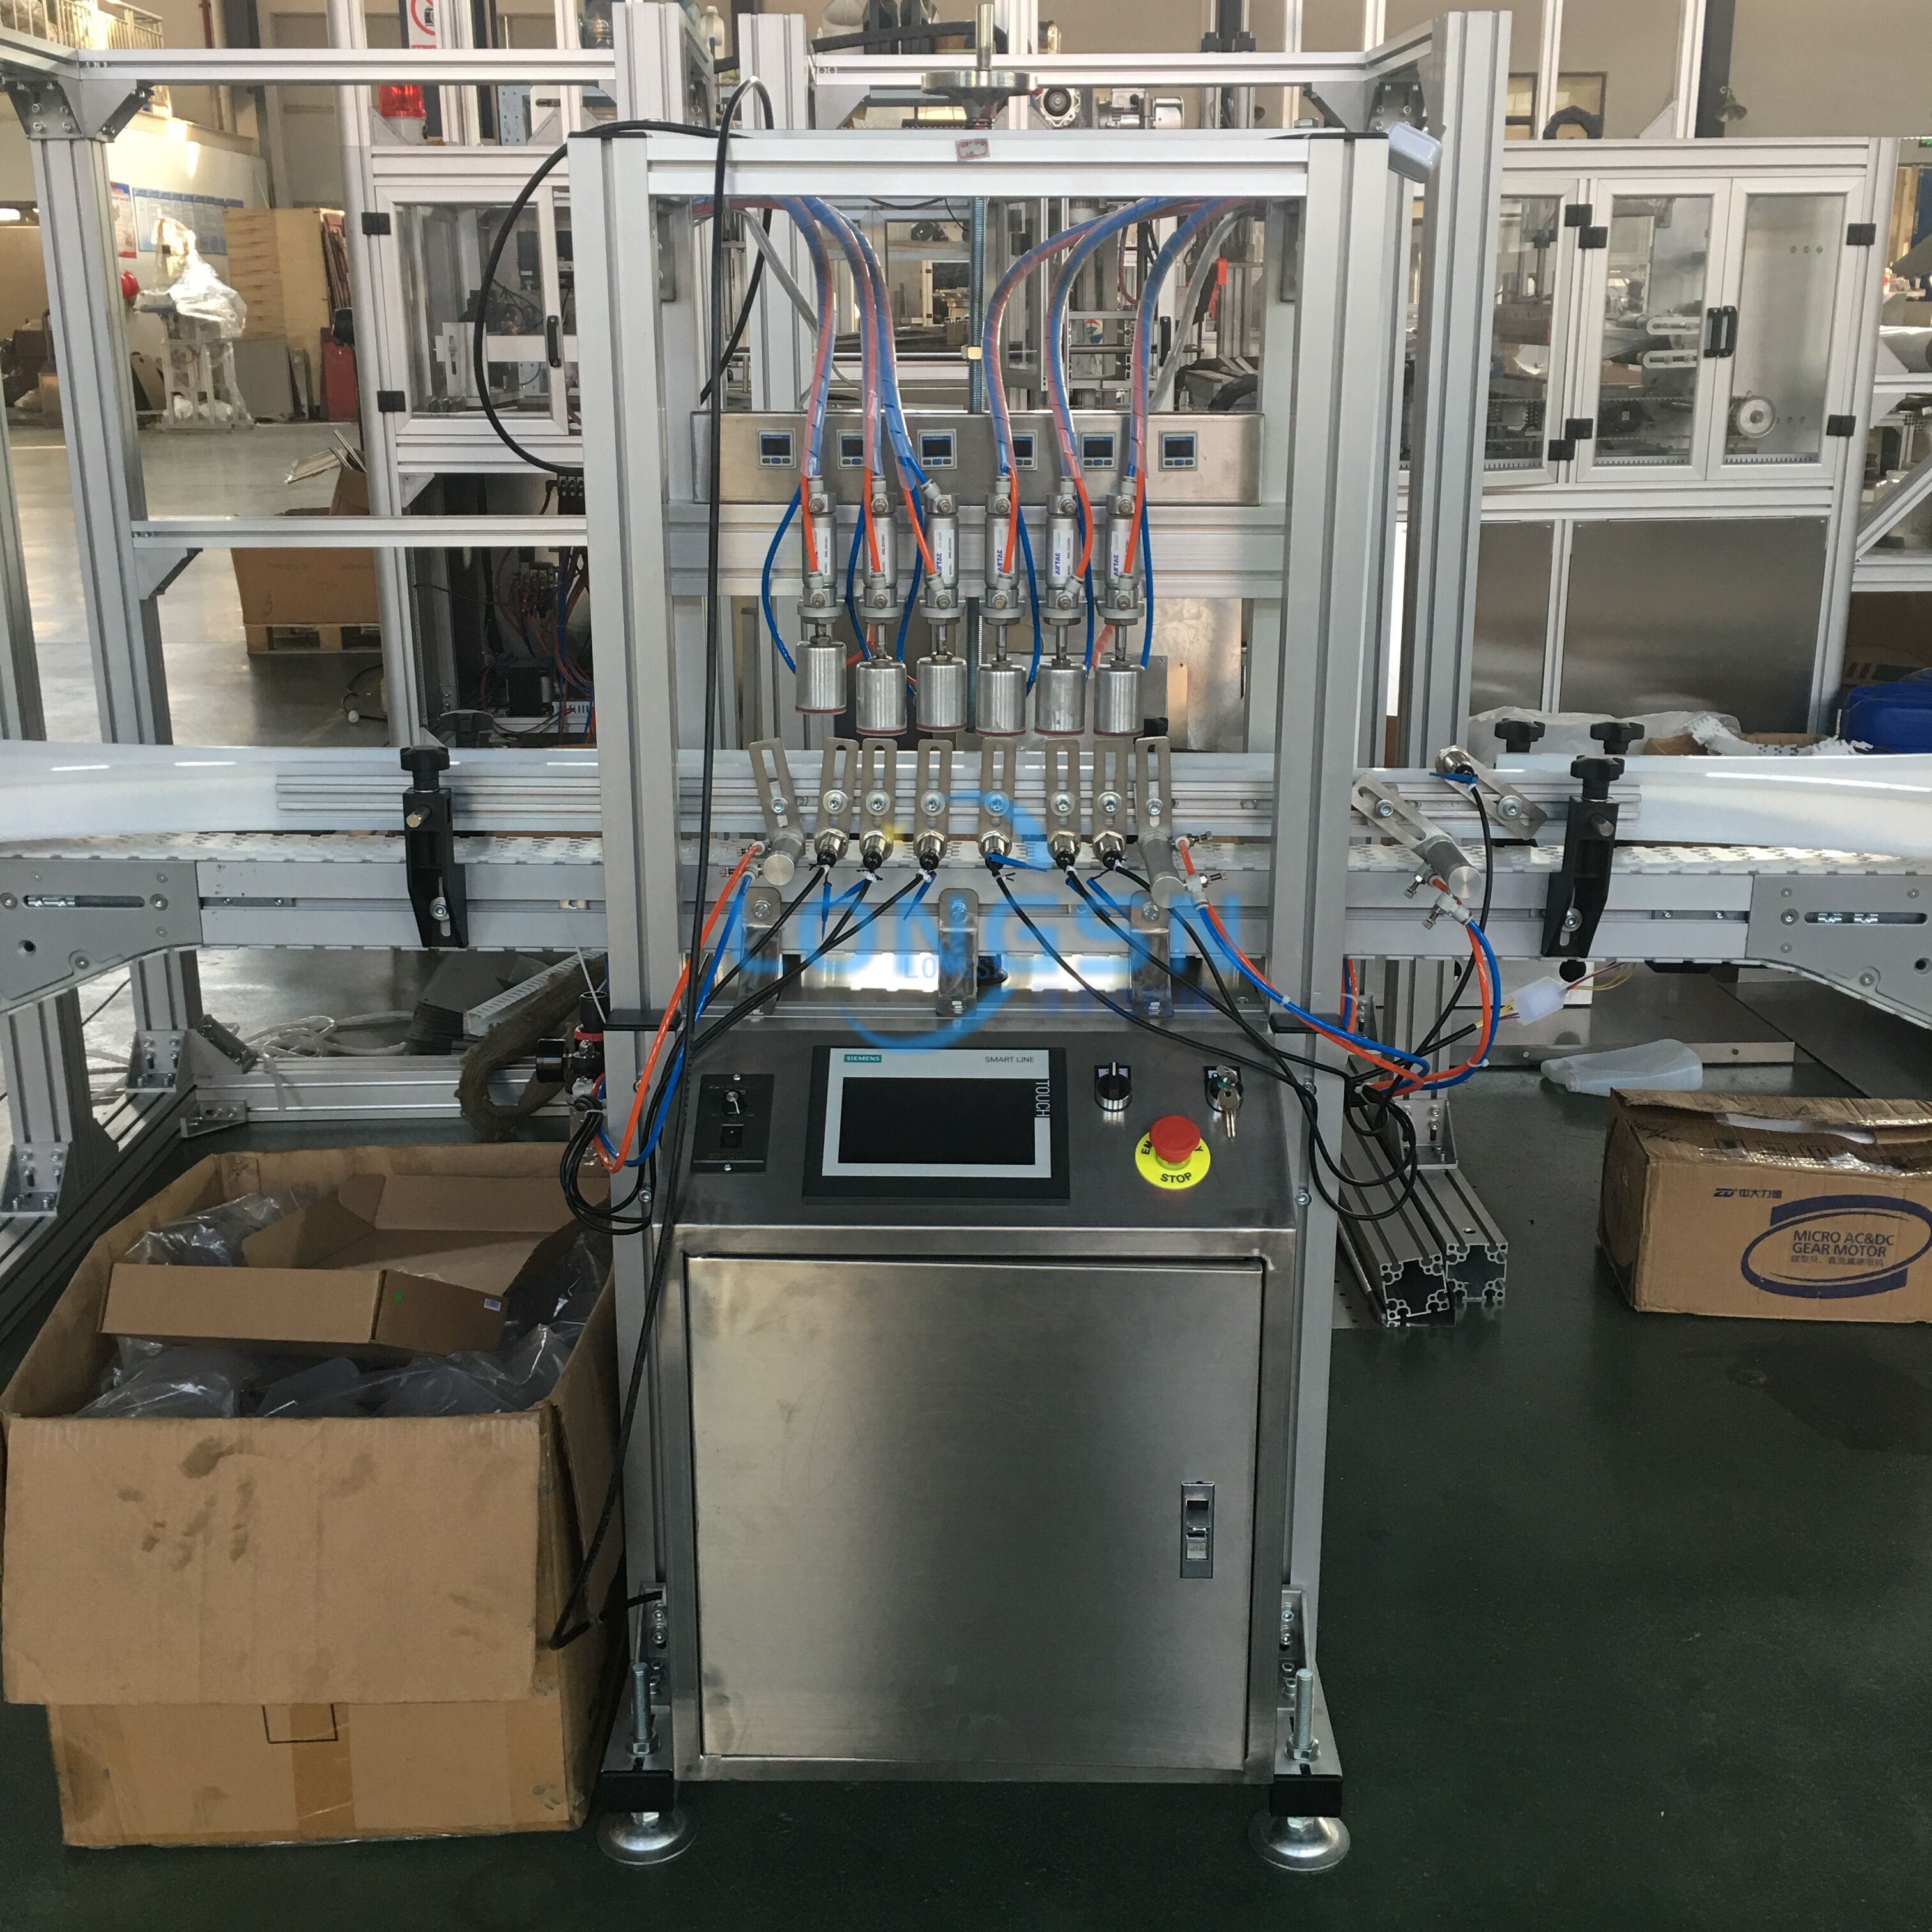 Máquina de prueba automática del detector de fugas de la botella del bidón vacío de la presión de aire